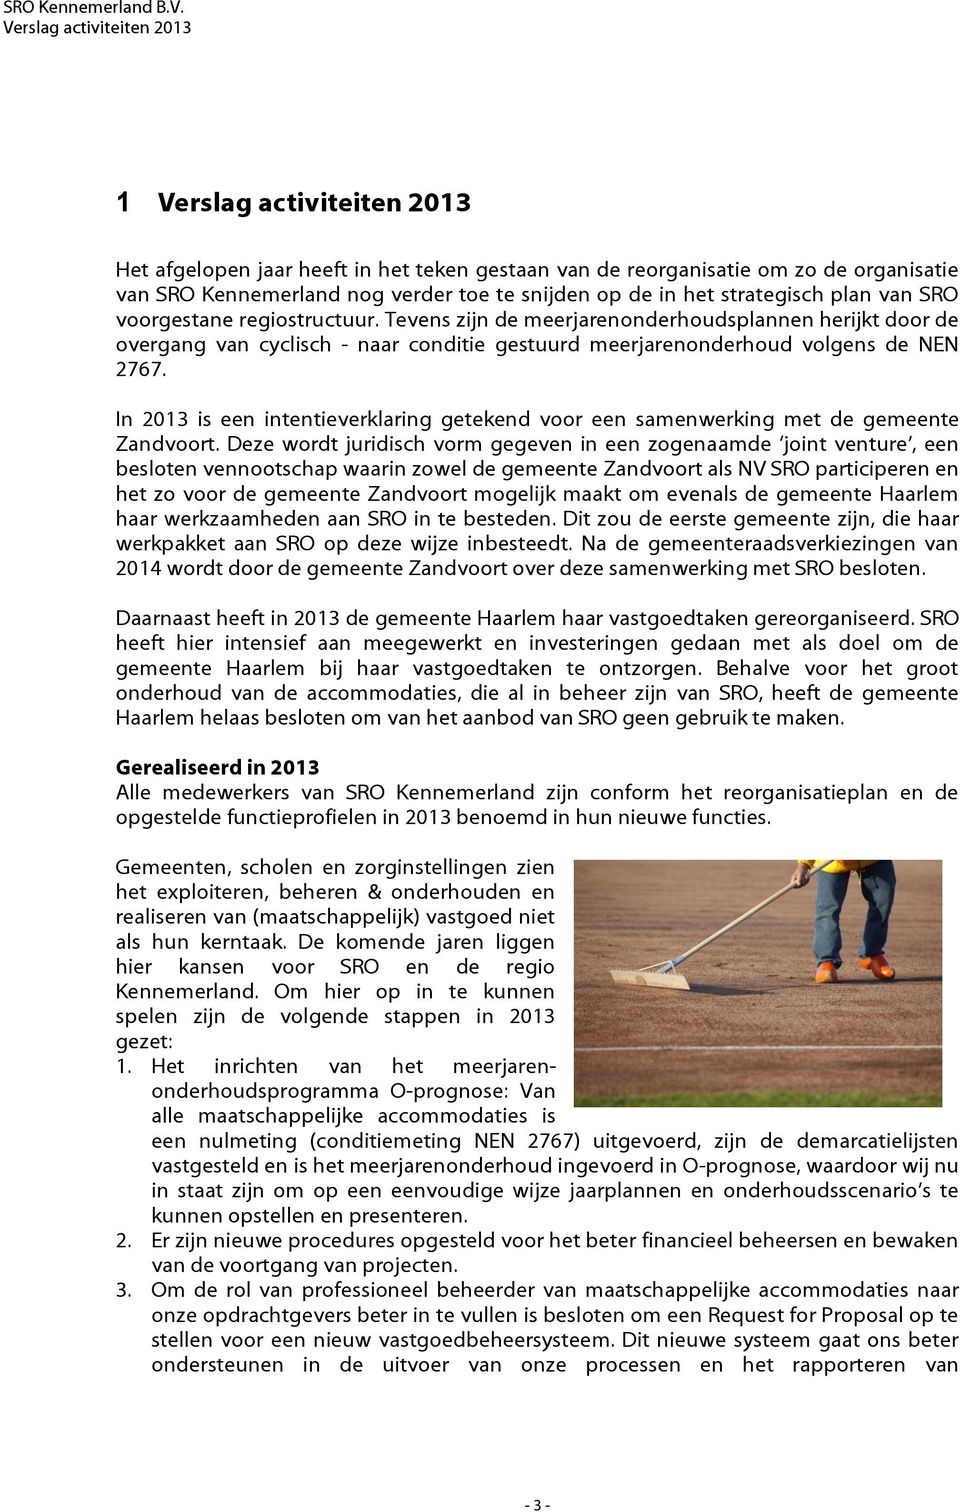 In 2013 is een intentieverklaring getekend voor een samenwerking met de gemeente Zandvoort.